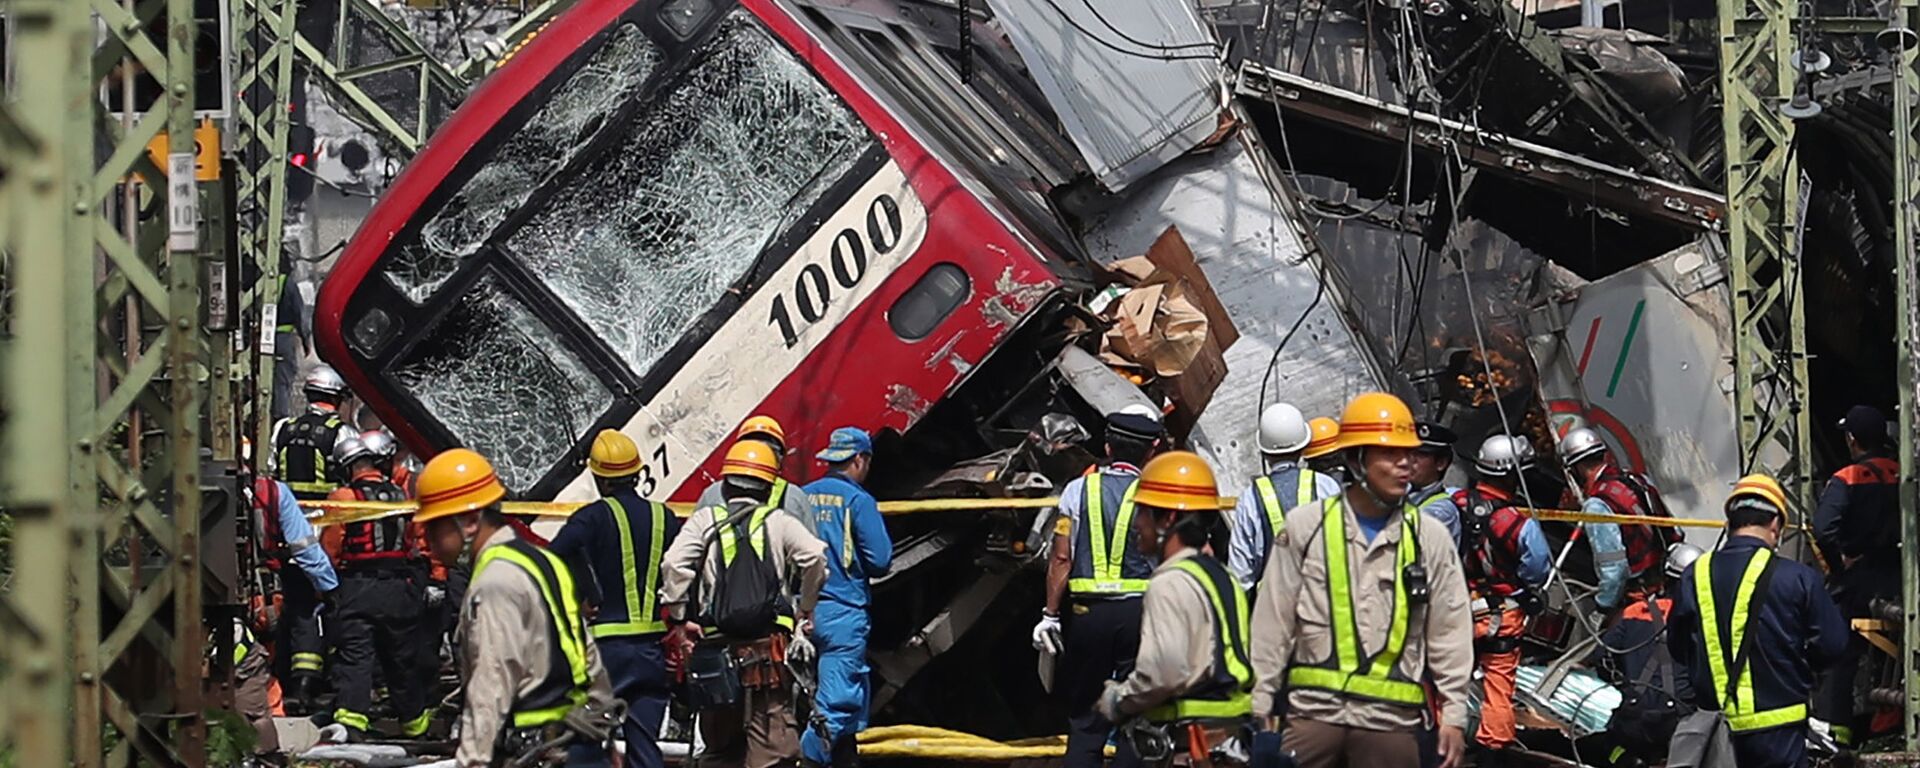 عواقب تصادم قطار مع شاحنة عند مفترق طرق في يوكوهاما، اليابان 5 سبتمبر 2019 - سبوتنيك عربي, 1920, 01.03.2023